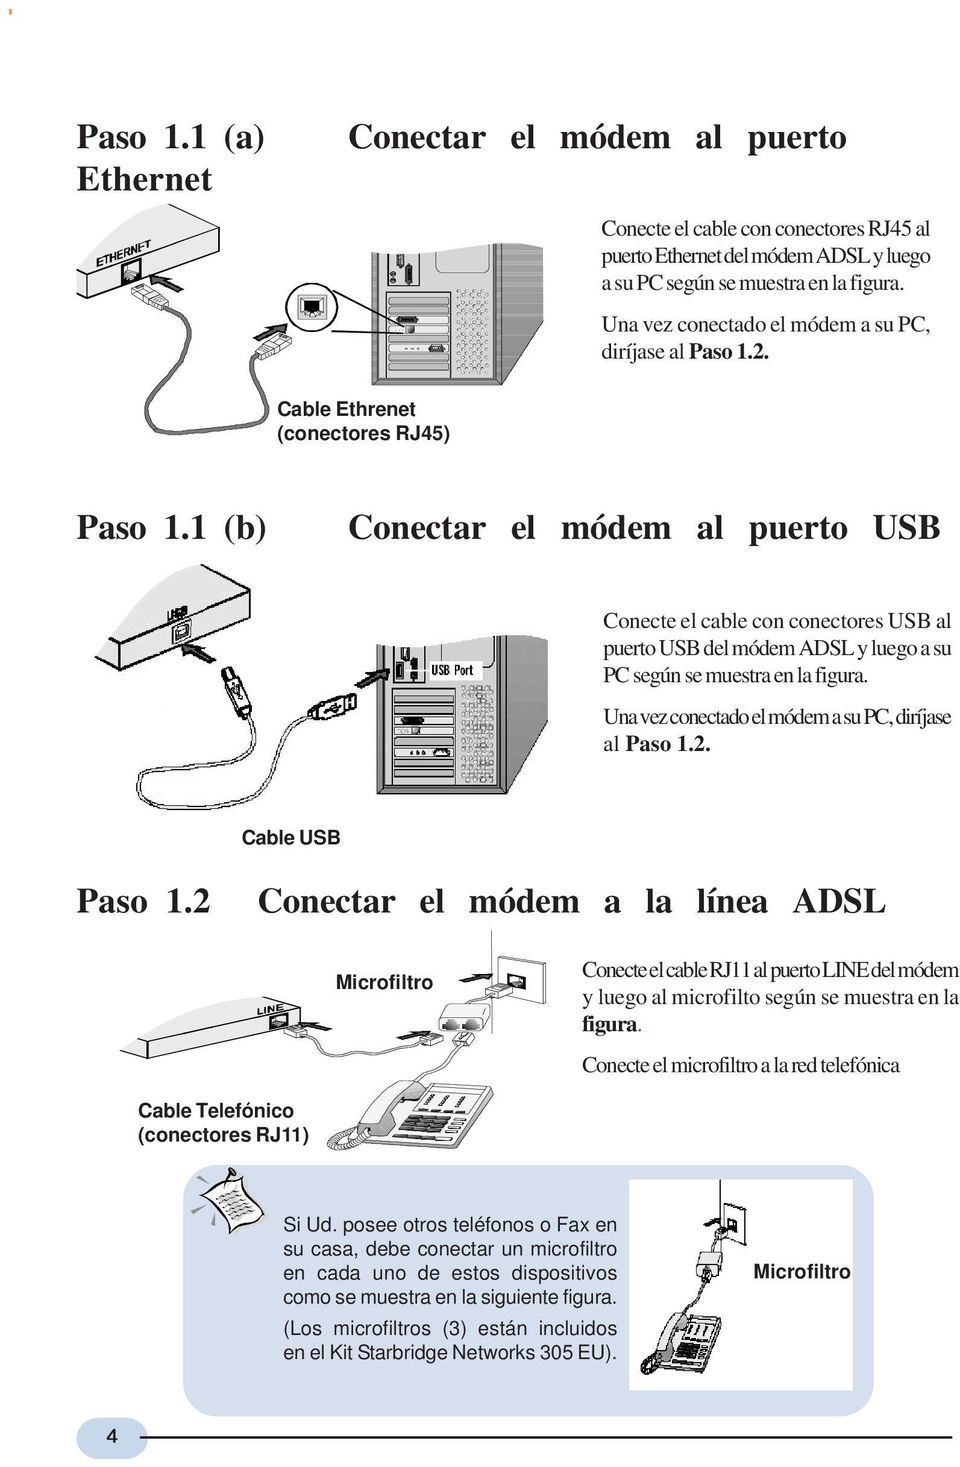 1 (b) Conectar el módem al puerto USB Conecte el cable con conectores USB al puerto USB del módem ADSL y luego a su PC según se muestra en la fgura.